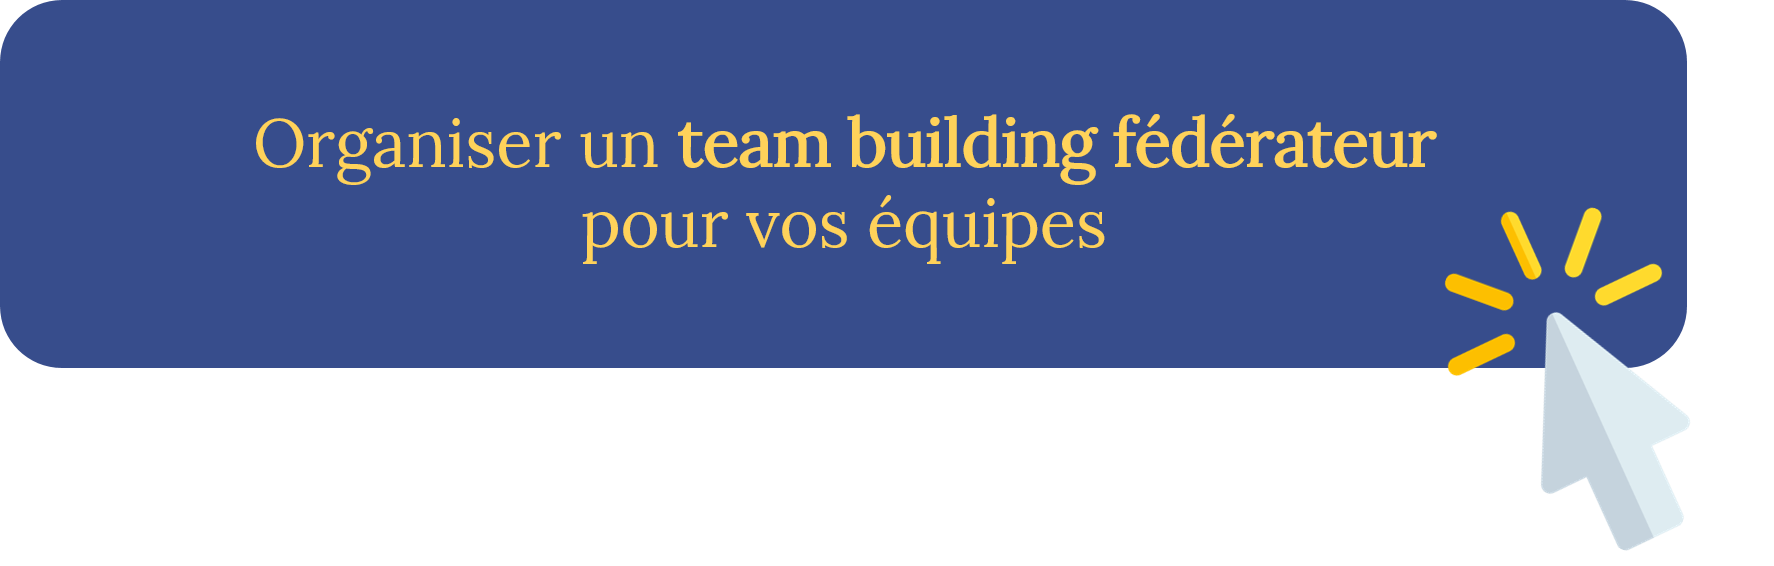 Organiser un team building féédrateur pour vos équipes - Contact Châteauform'